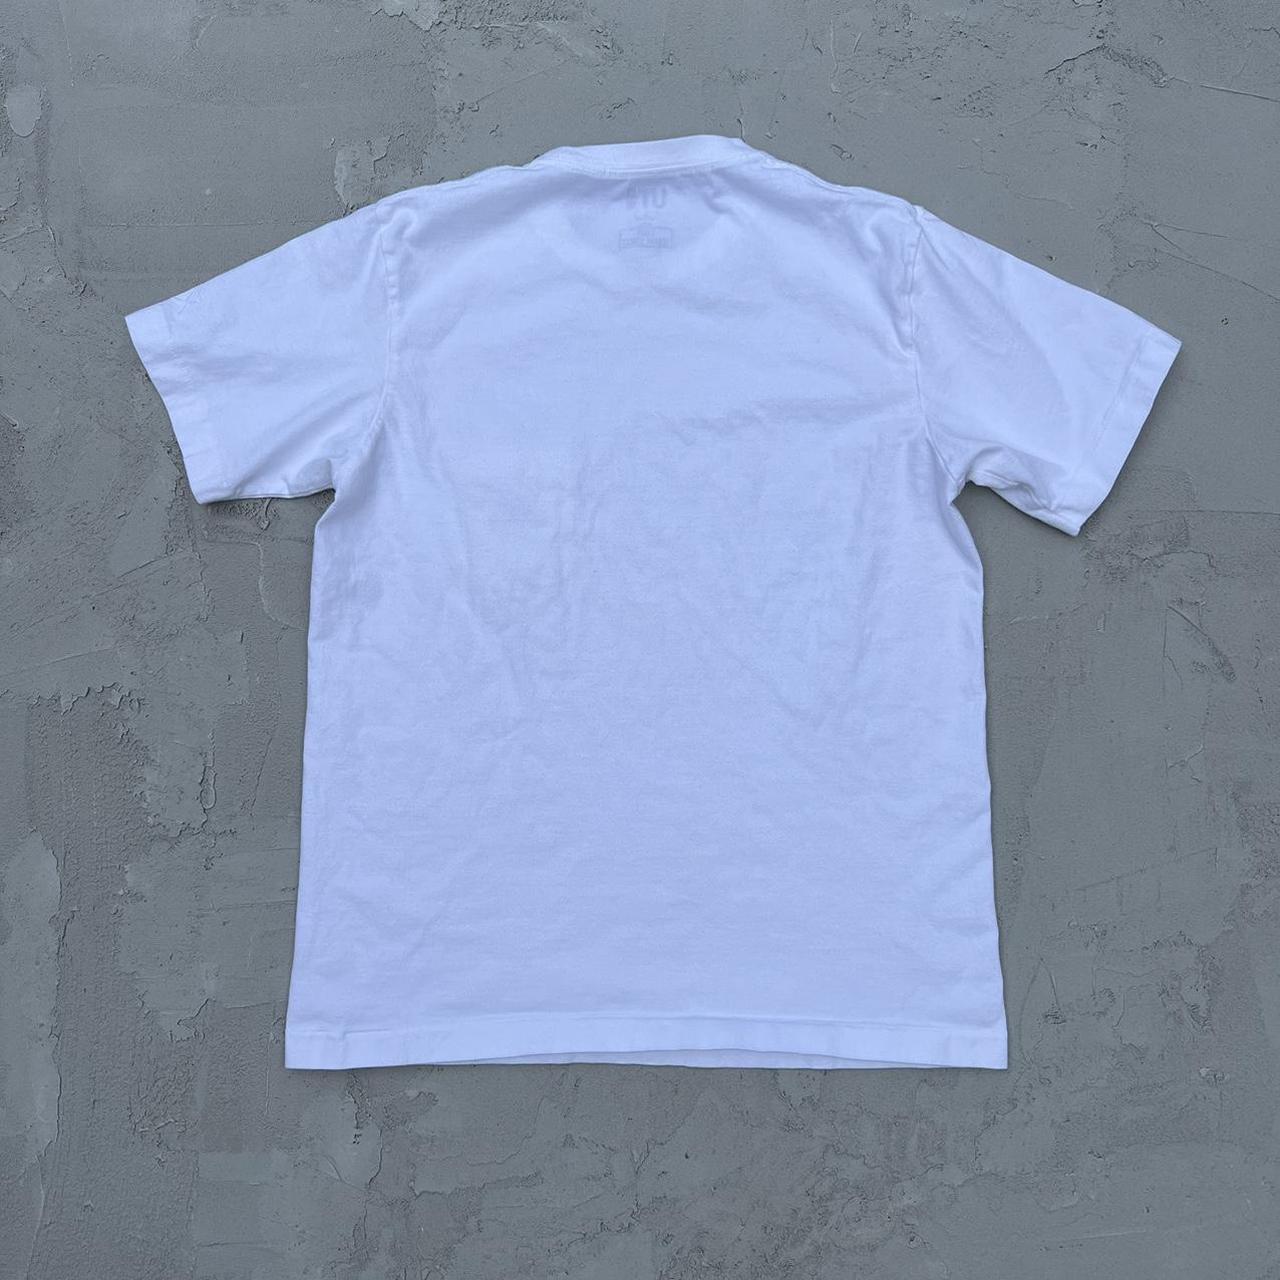 Kaws Men's White T-shirt (4)